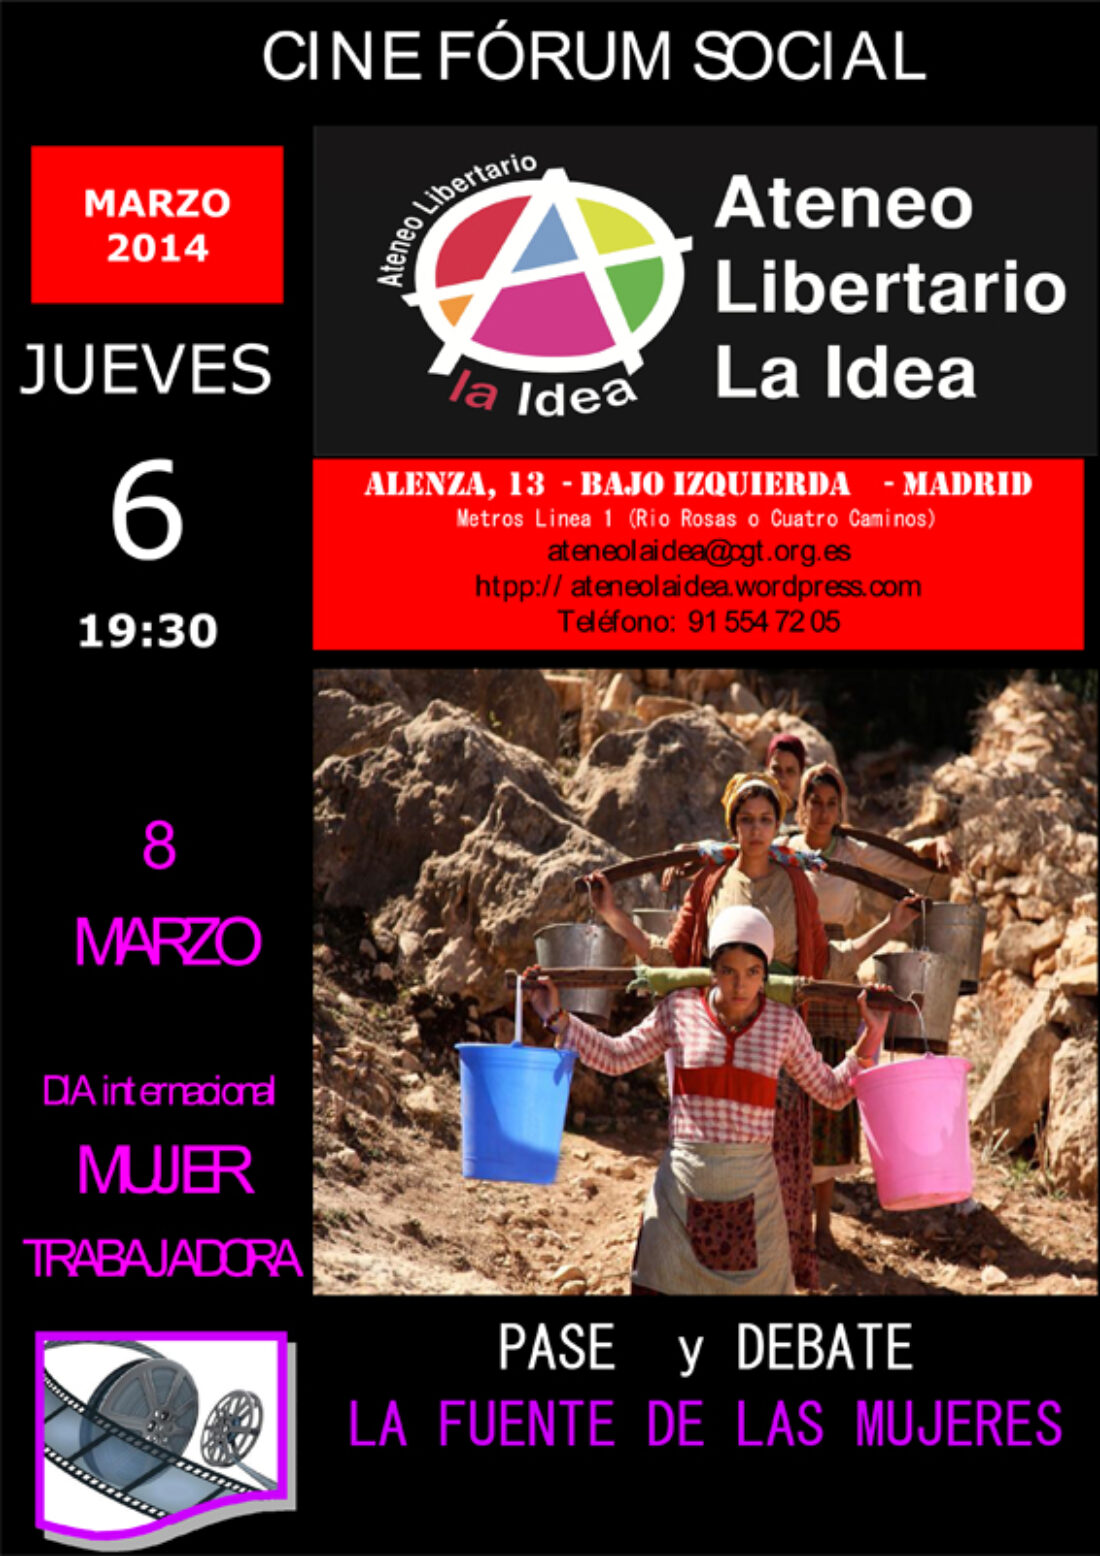 Cinefórum Social en Ateneo Libertario «La Idea»: Día Internacional de la Mujer Trabajadora